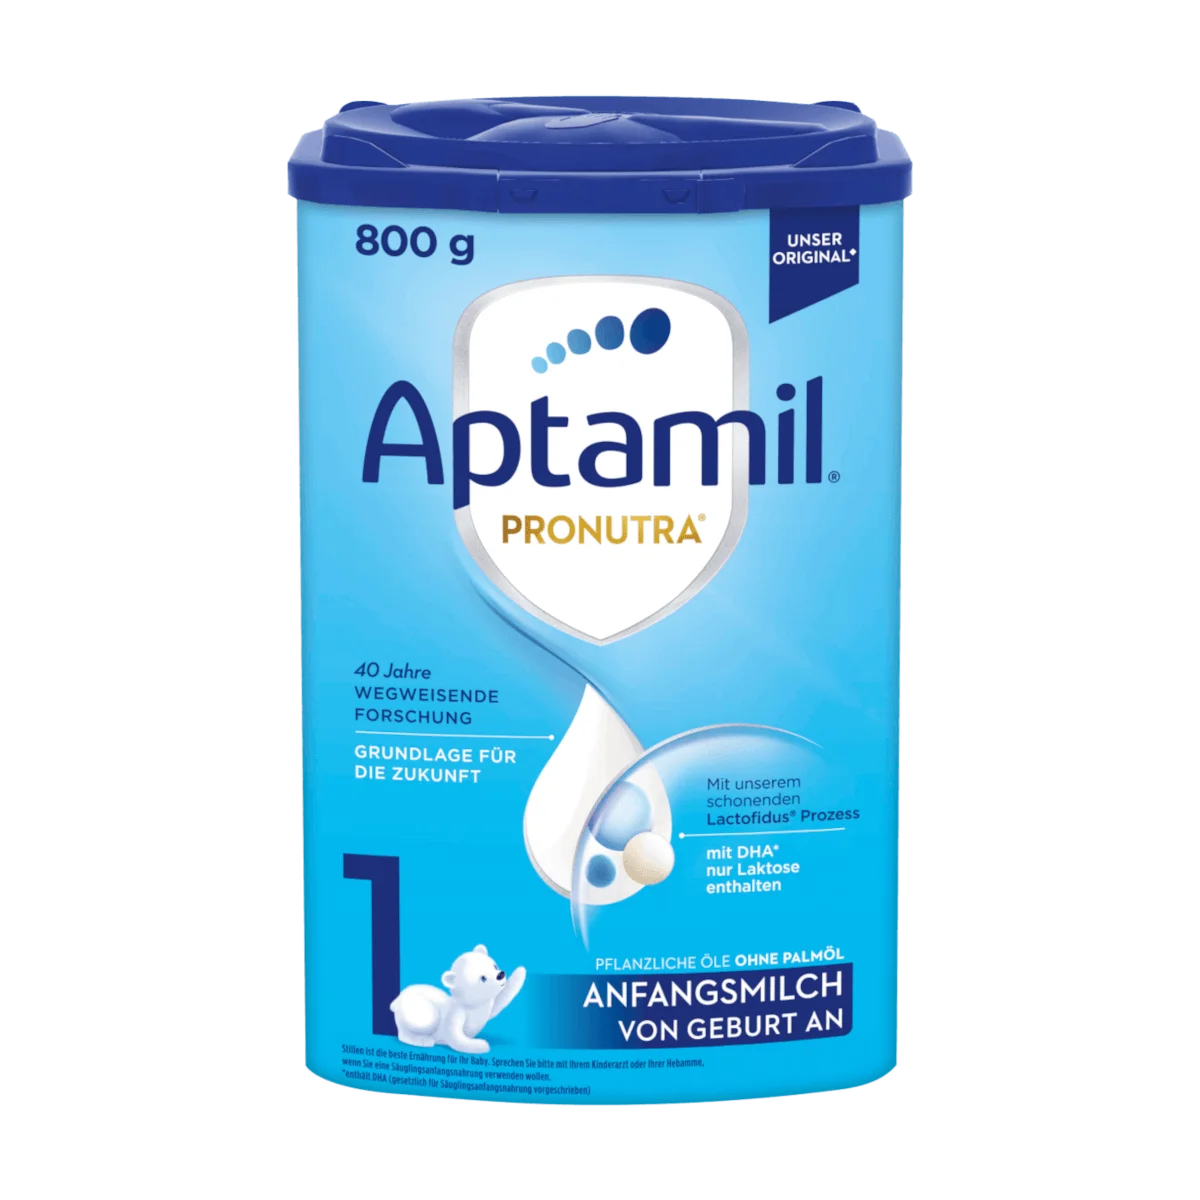 Aptamil Anfangsmilch 1 Pronutra von Geburt an, 800 g